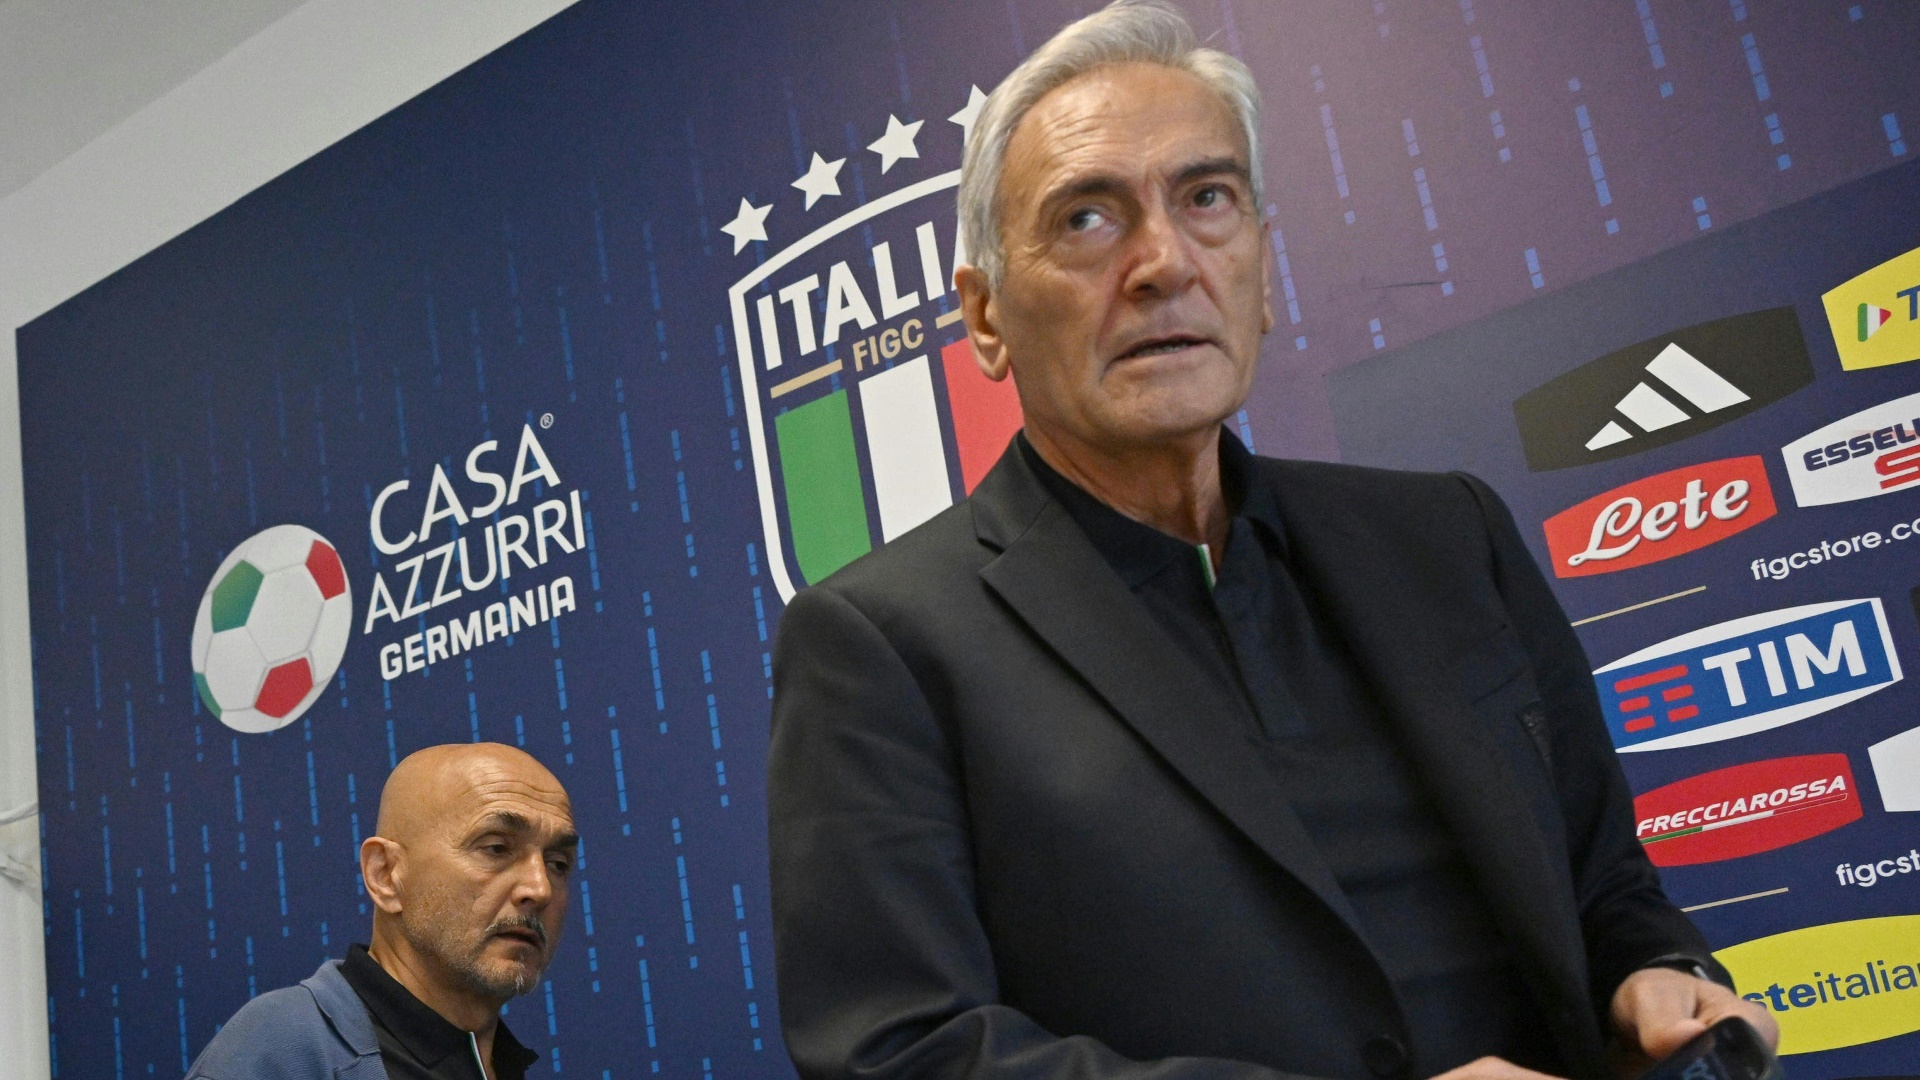 Nach EM-Aus: Italiens Fußballverband ruft zu Neuwahlen auf